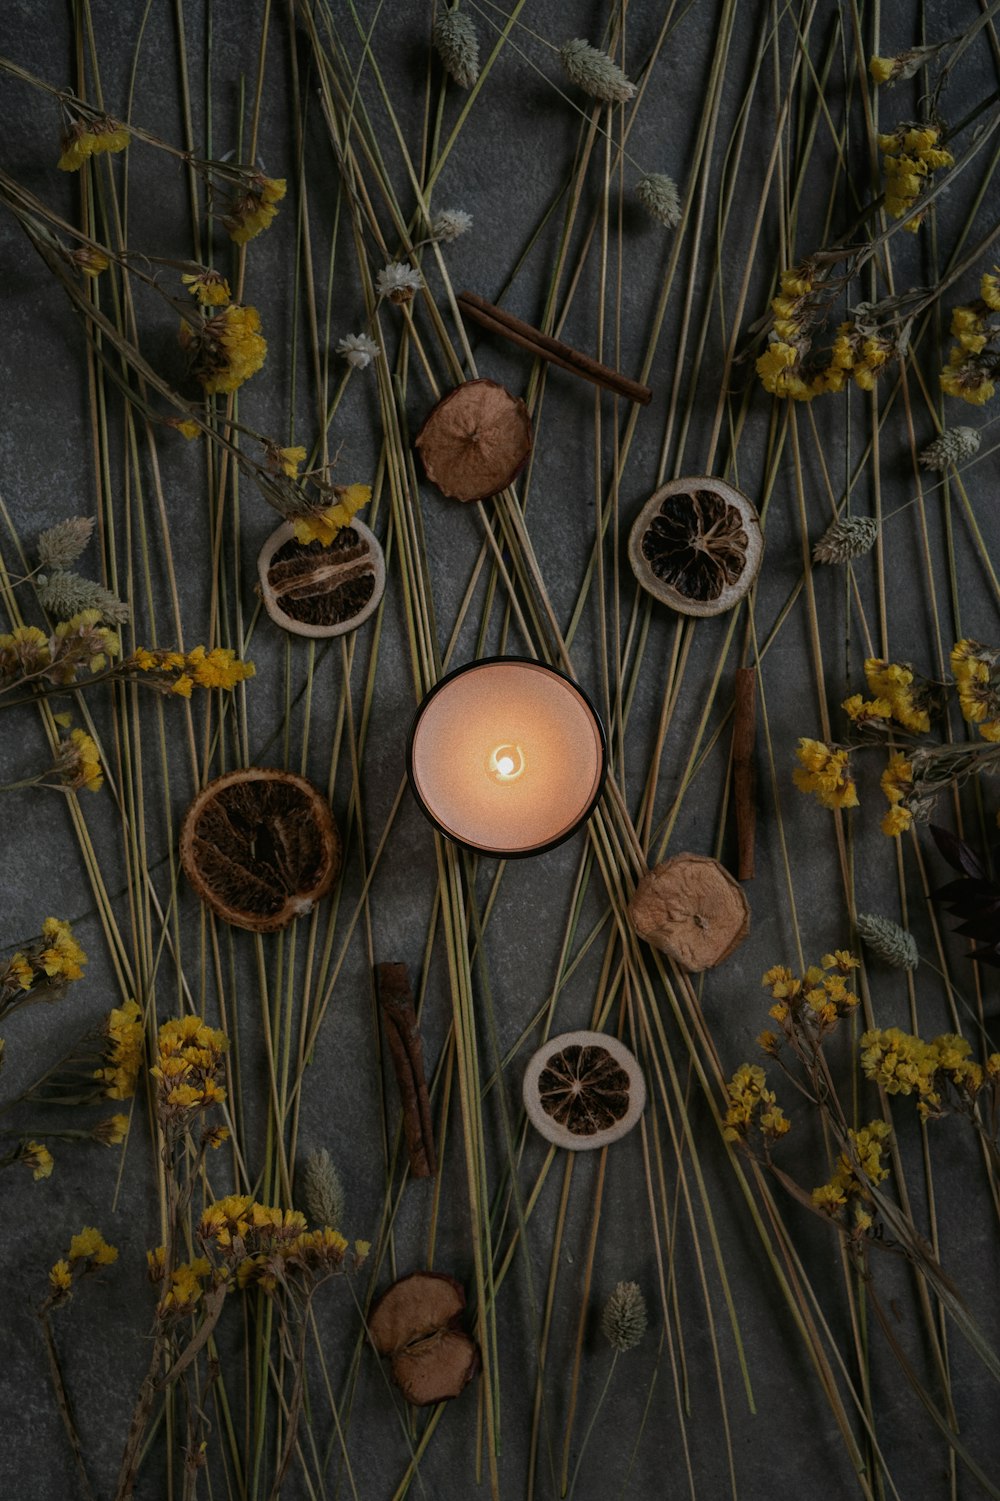 마른 꽃과 나뭇가지로 둘러싸인 불이 켜진 촛불